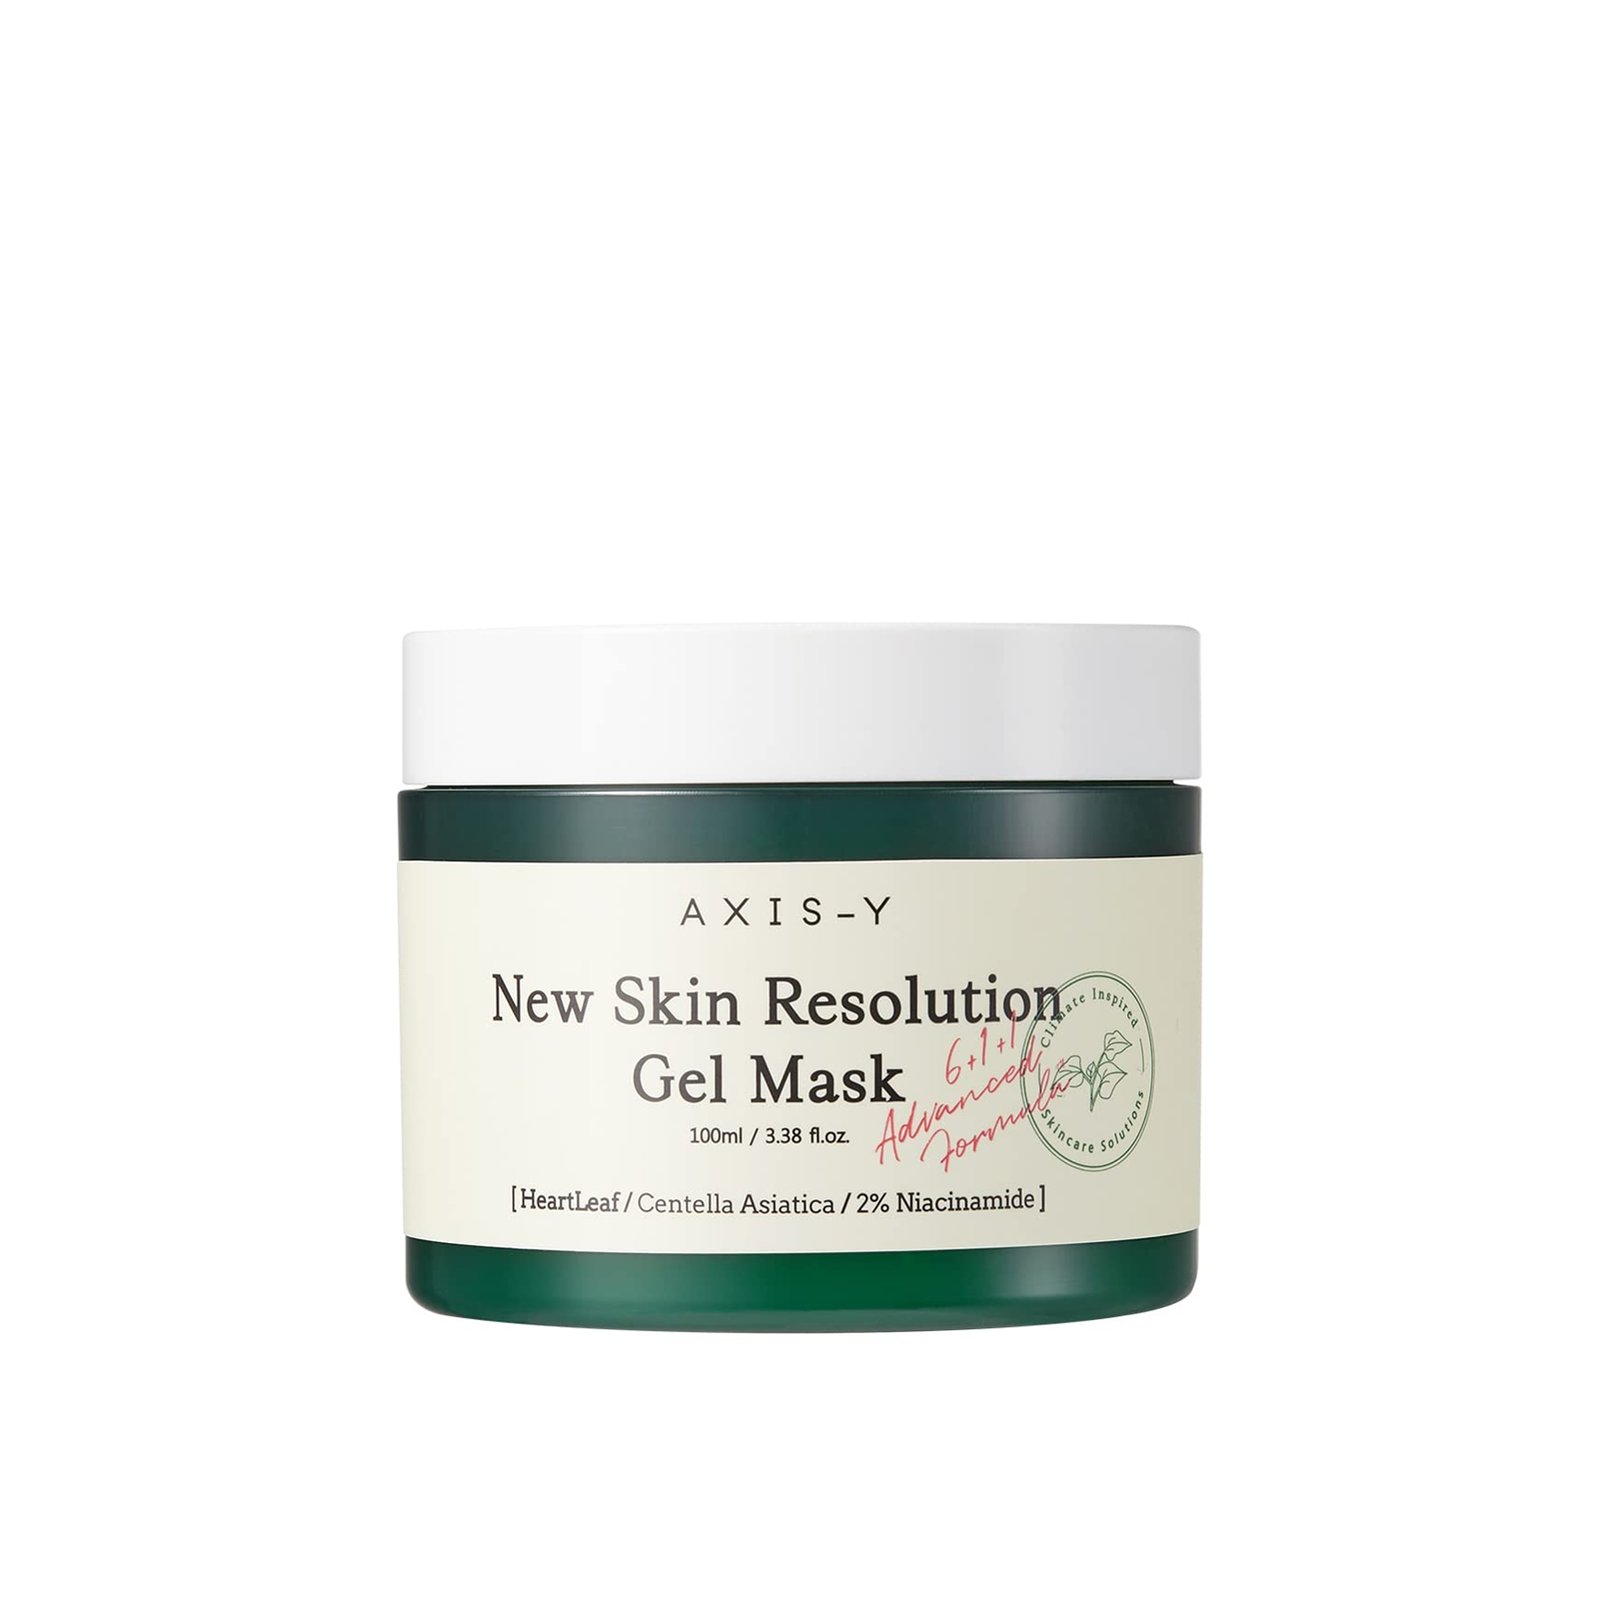 AXIS-Y New Skin Resolution Gel Mask 100ml (3.38 fl oz)